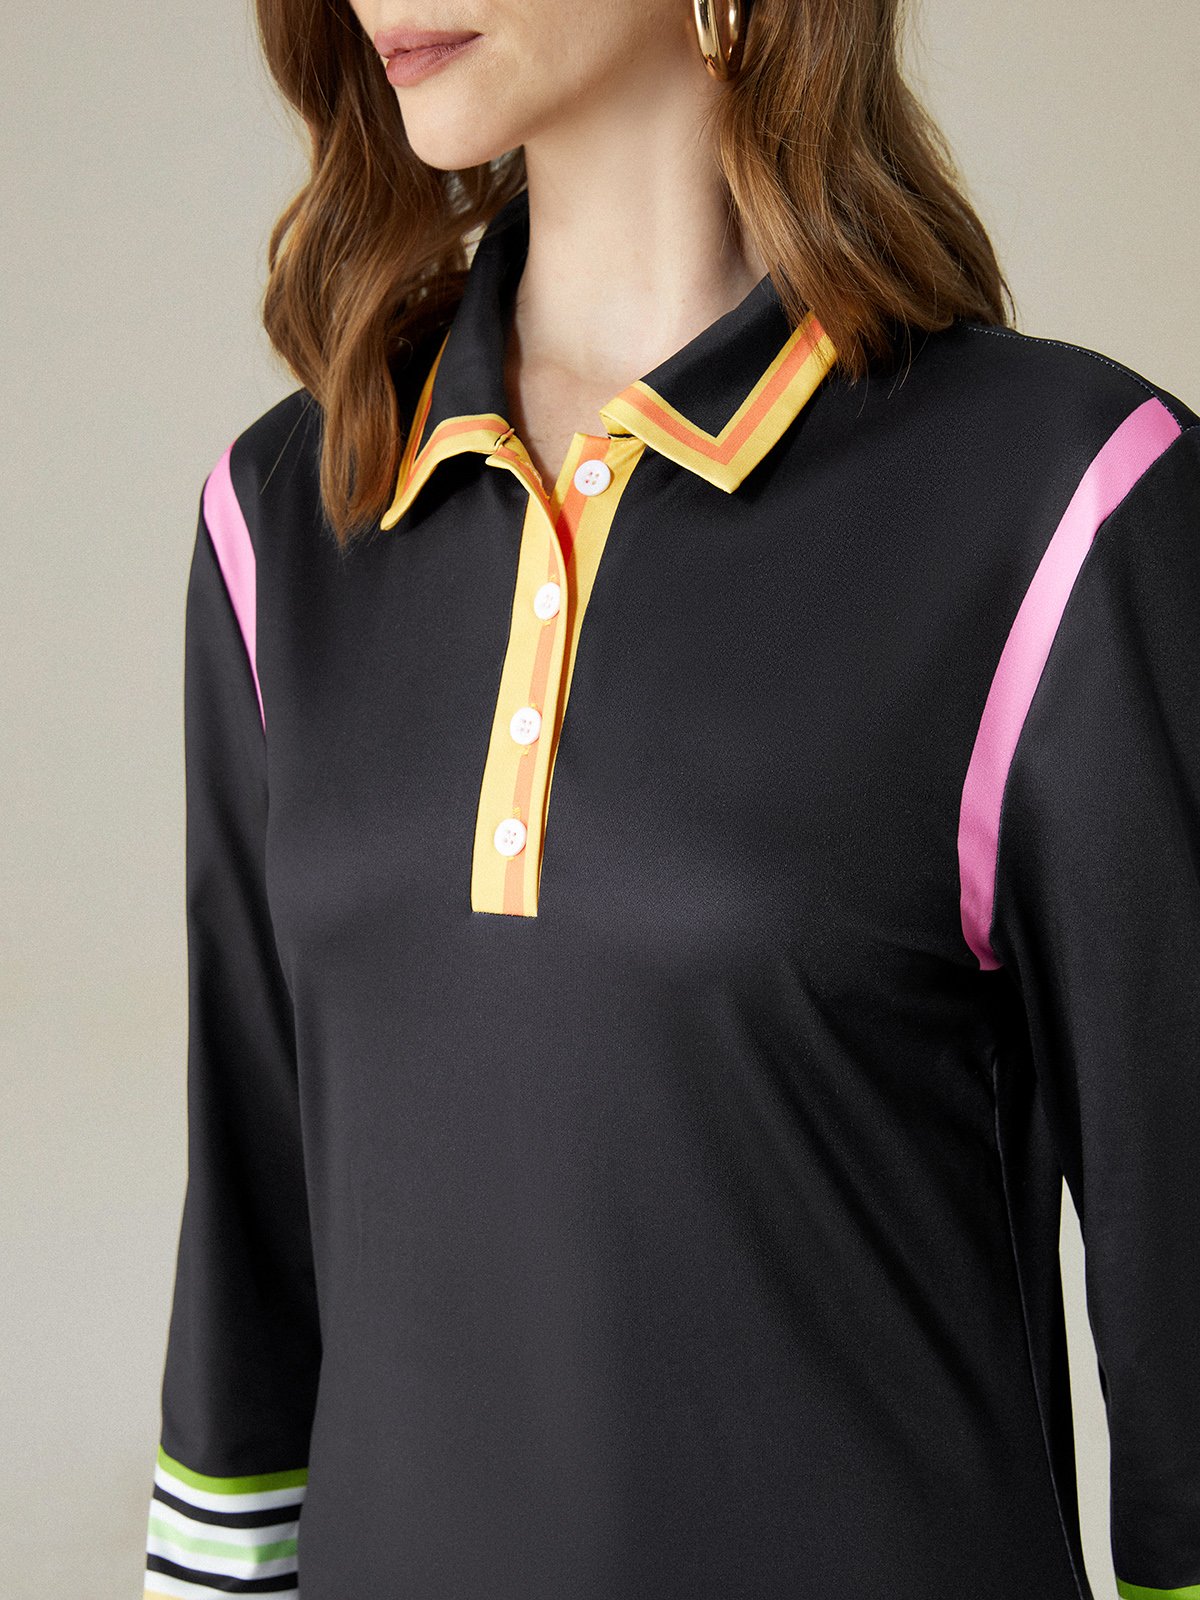 Regular Fit Color Block Shirt Collar Elegant Midi Dress With No Belt